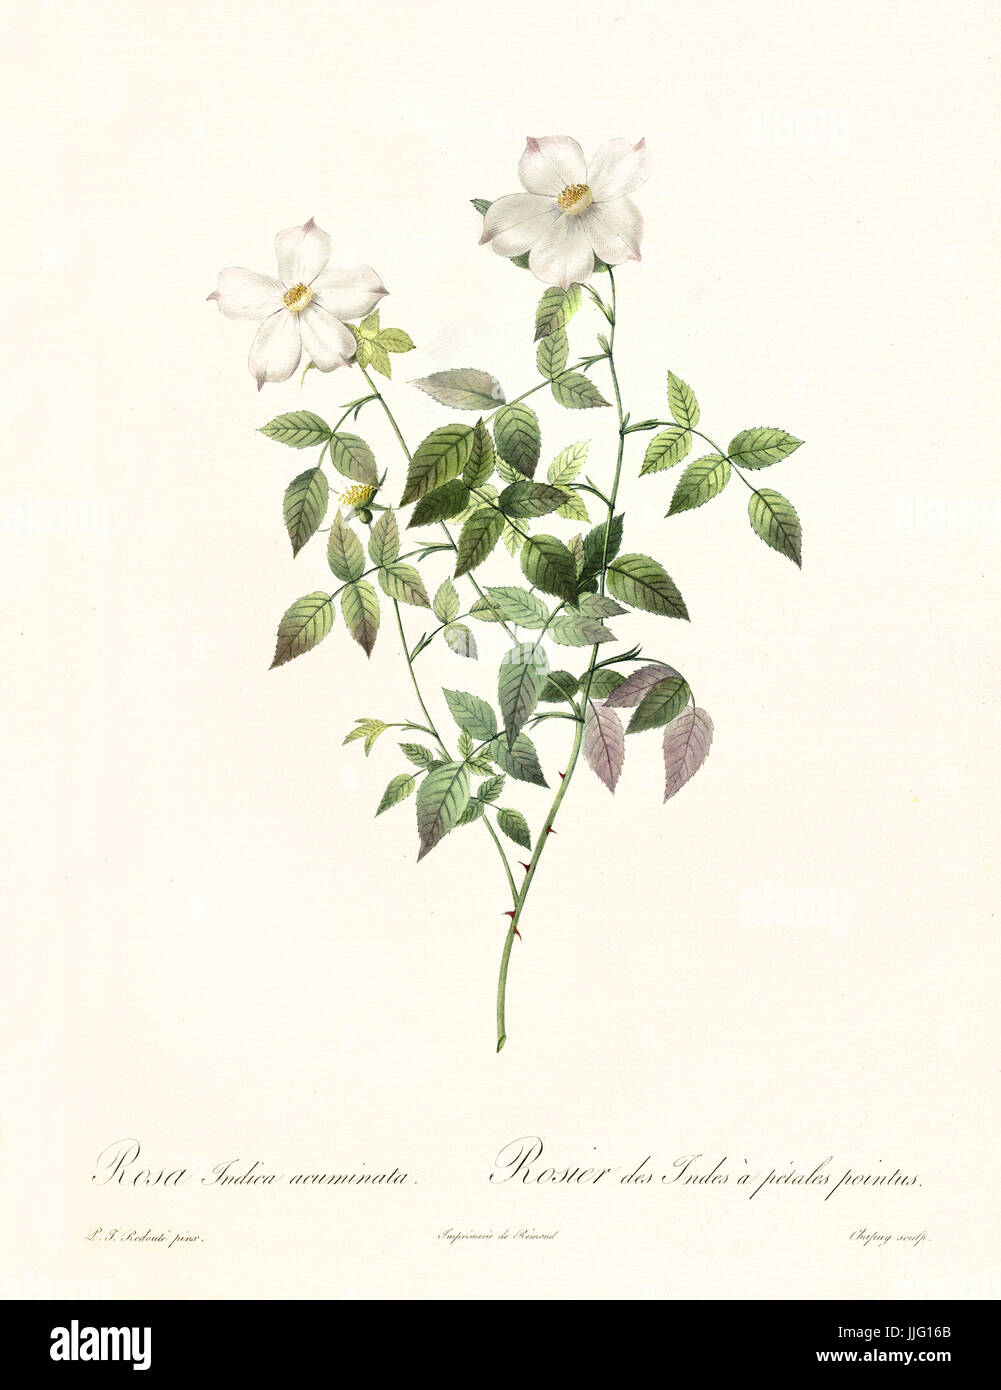 Vecchia illustrazione di rosa indica acuminati. Creato da P. R. Redoute, pubblicato su Les Roses, Imp. Firmin Didot, Parigi, 1817-24 Foto Stock